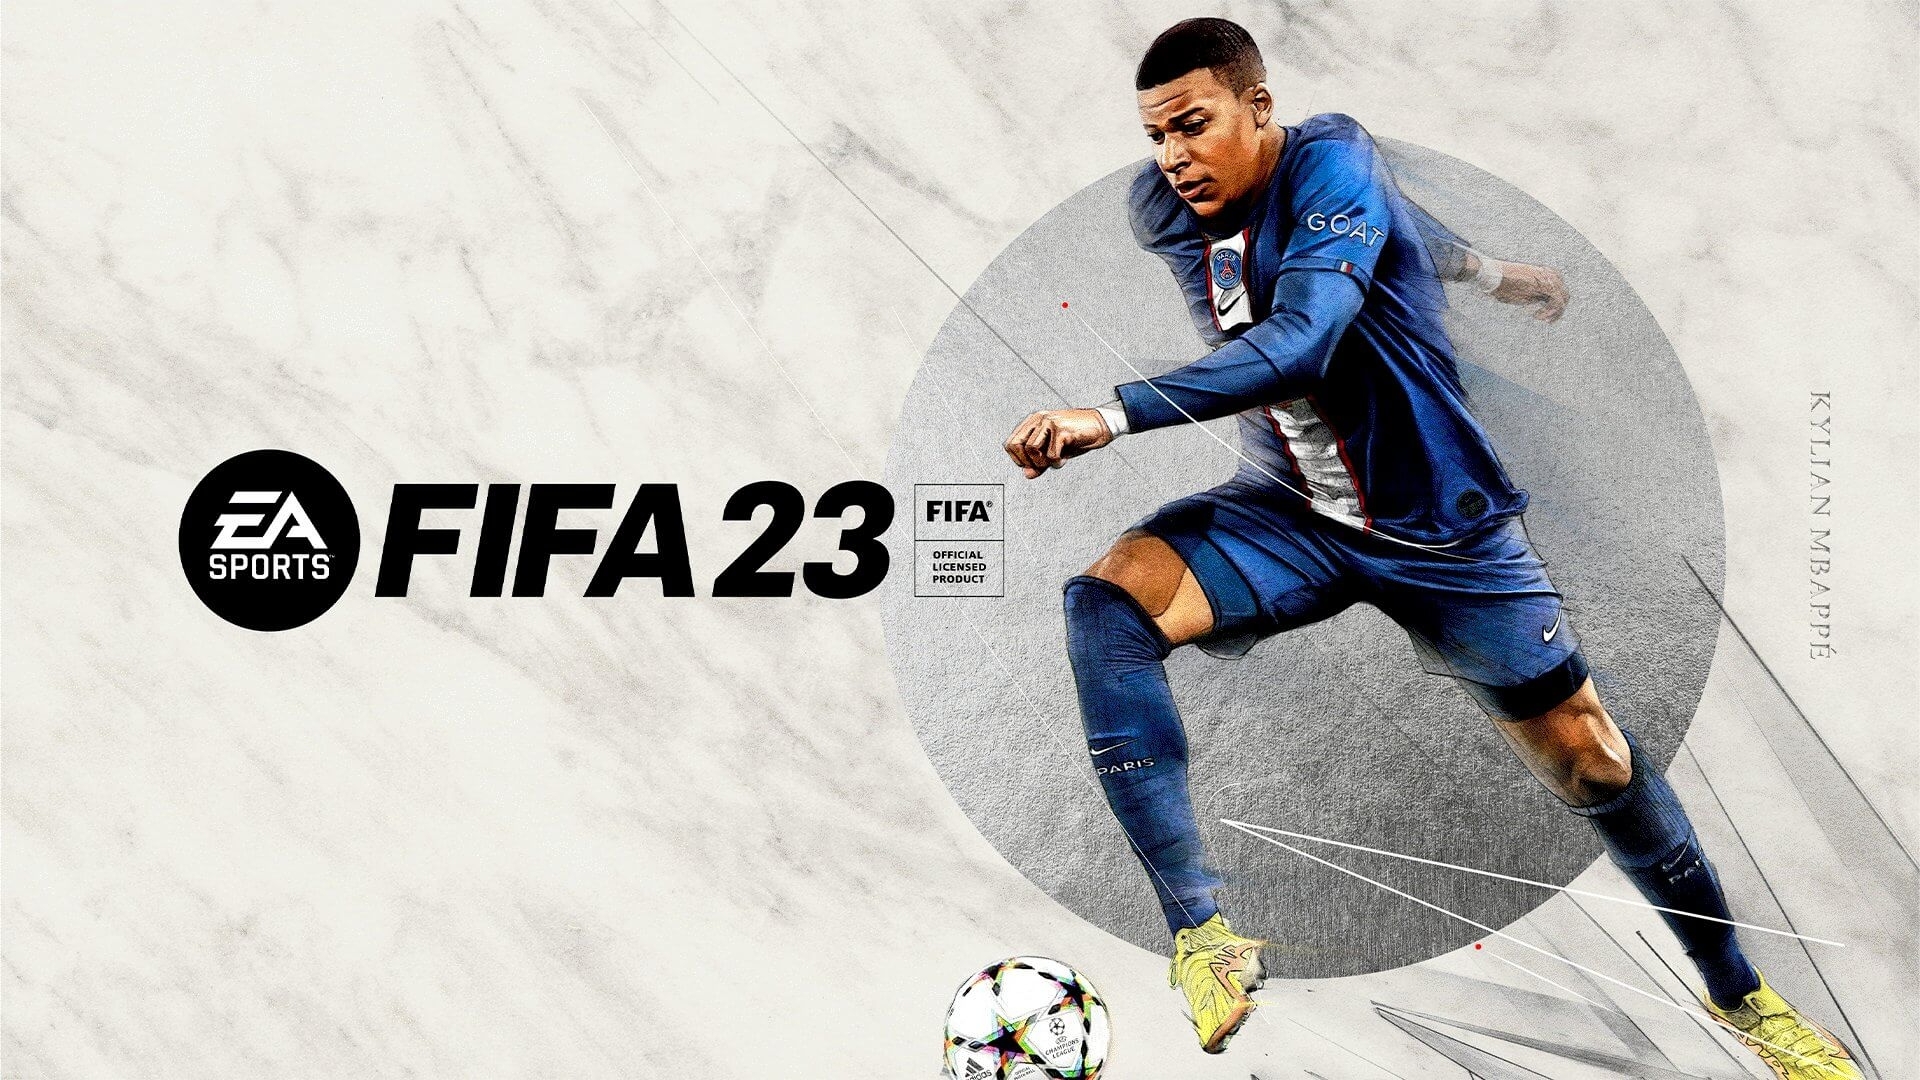 Requisitos Mínimos e Recomendados para Correr FIFA 18 no PC